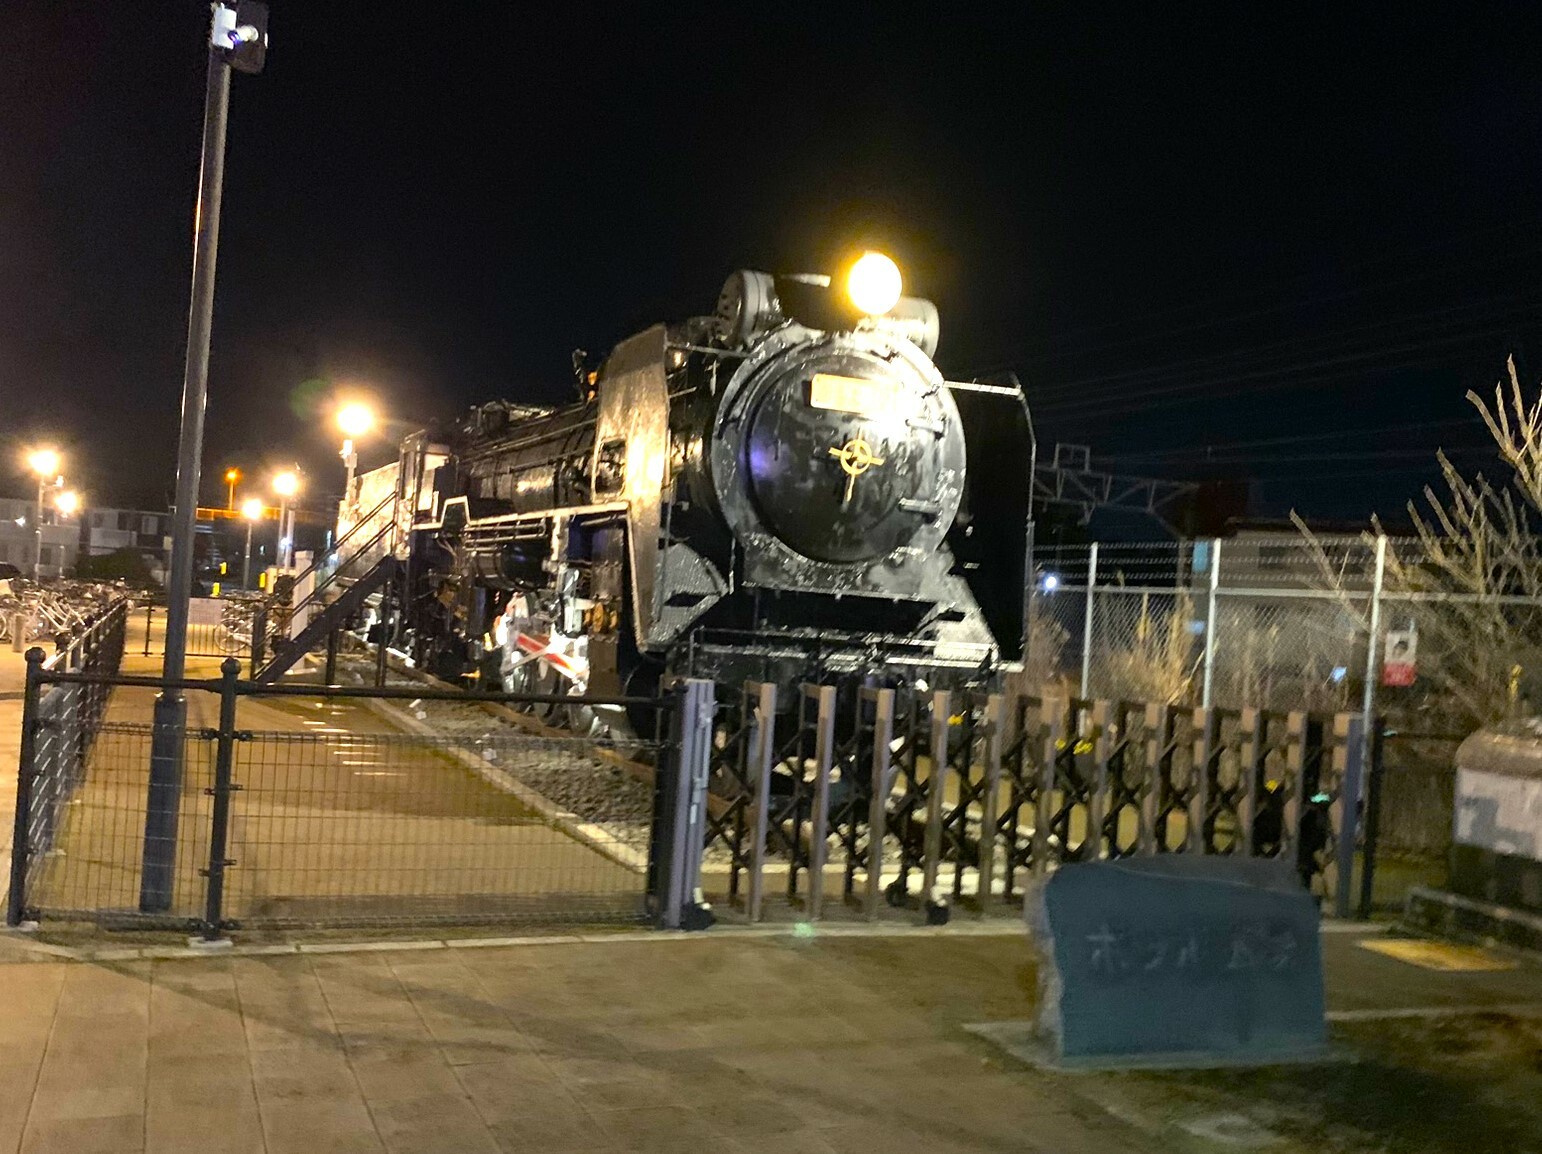 蒸気機関車D5272車両が展示されています